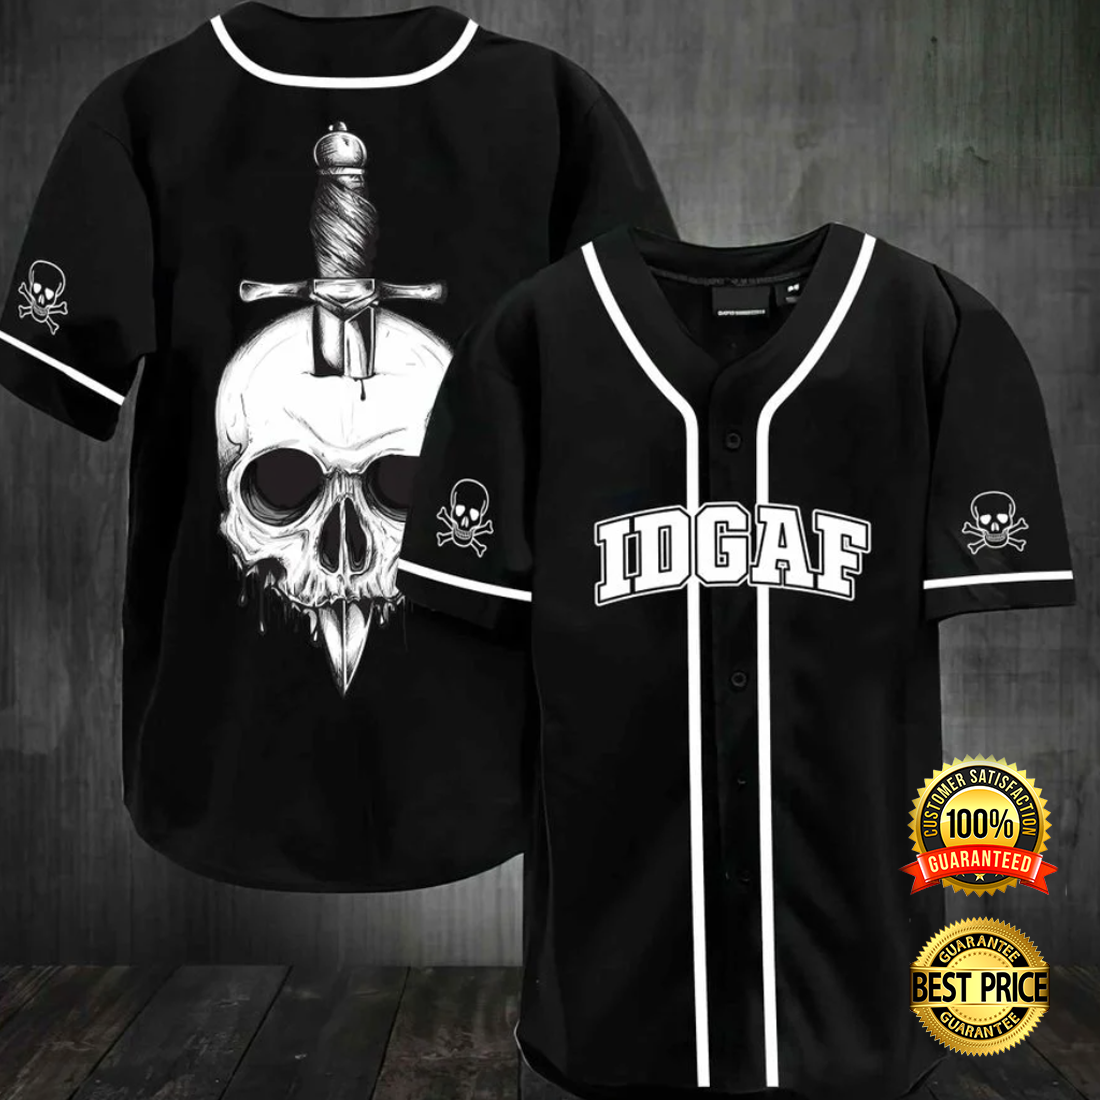 Skull IDGAF baseball jersey